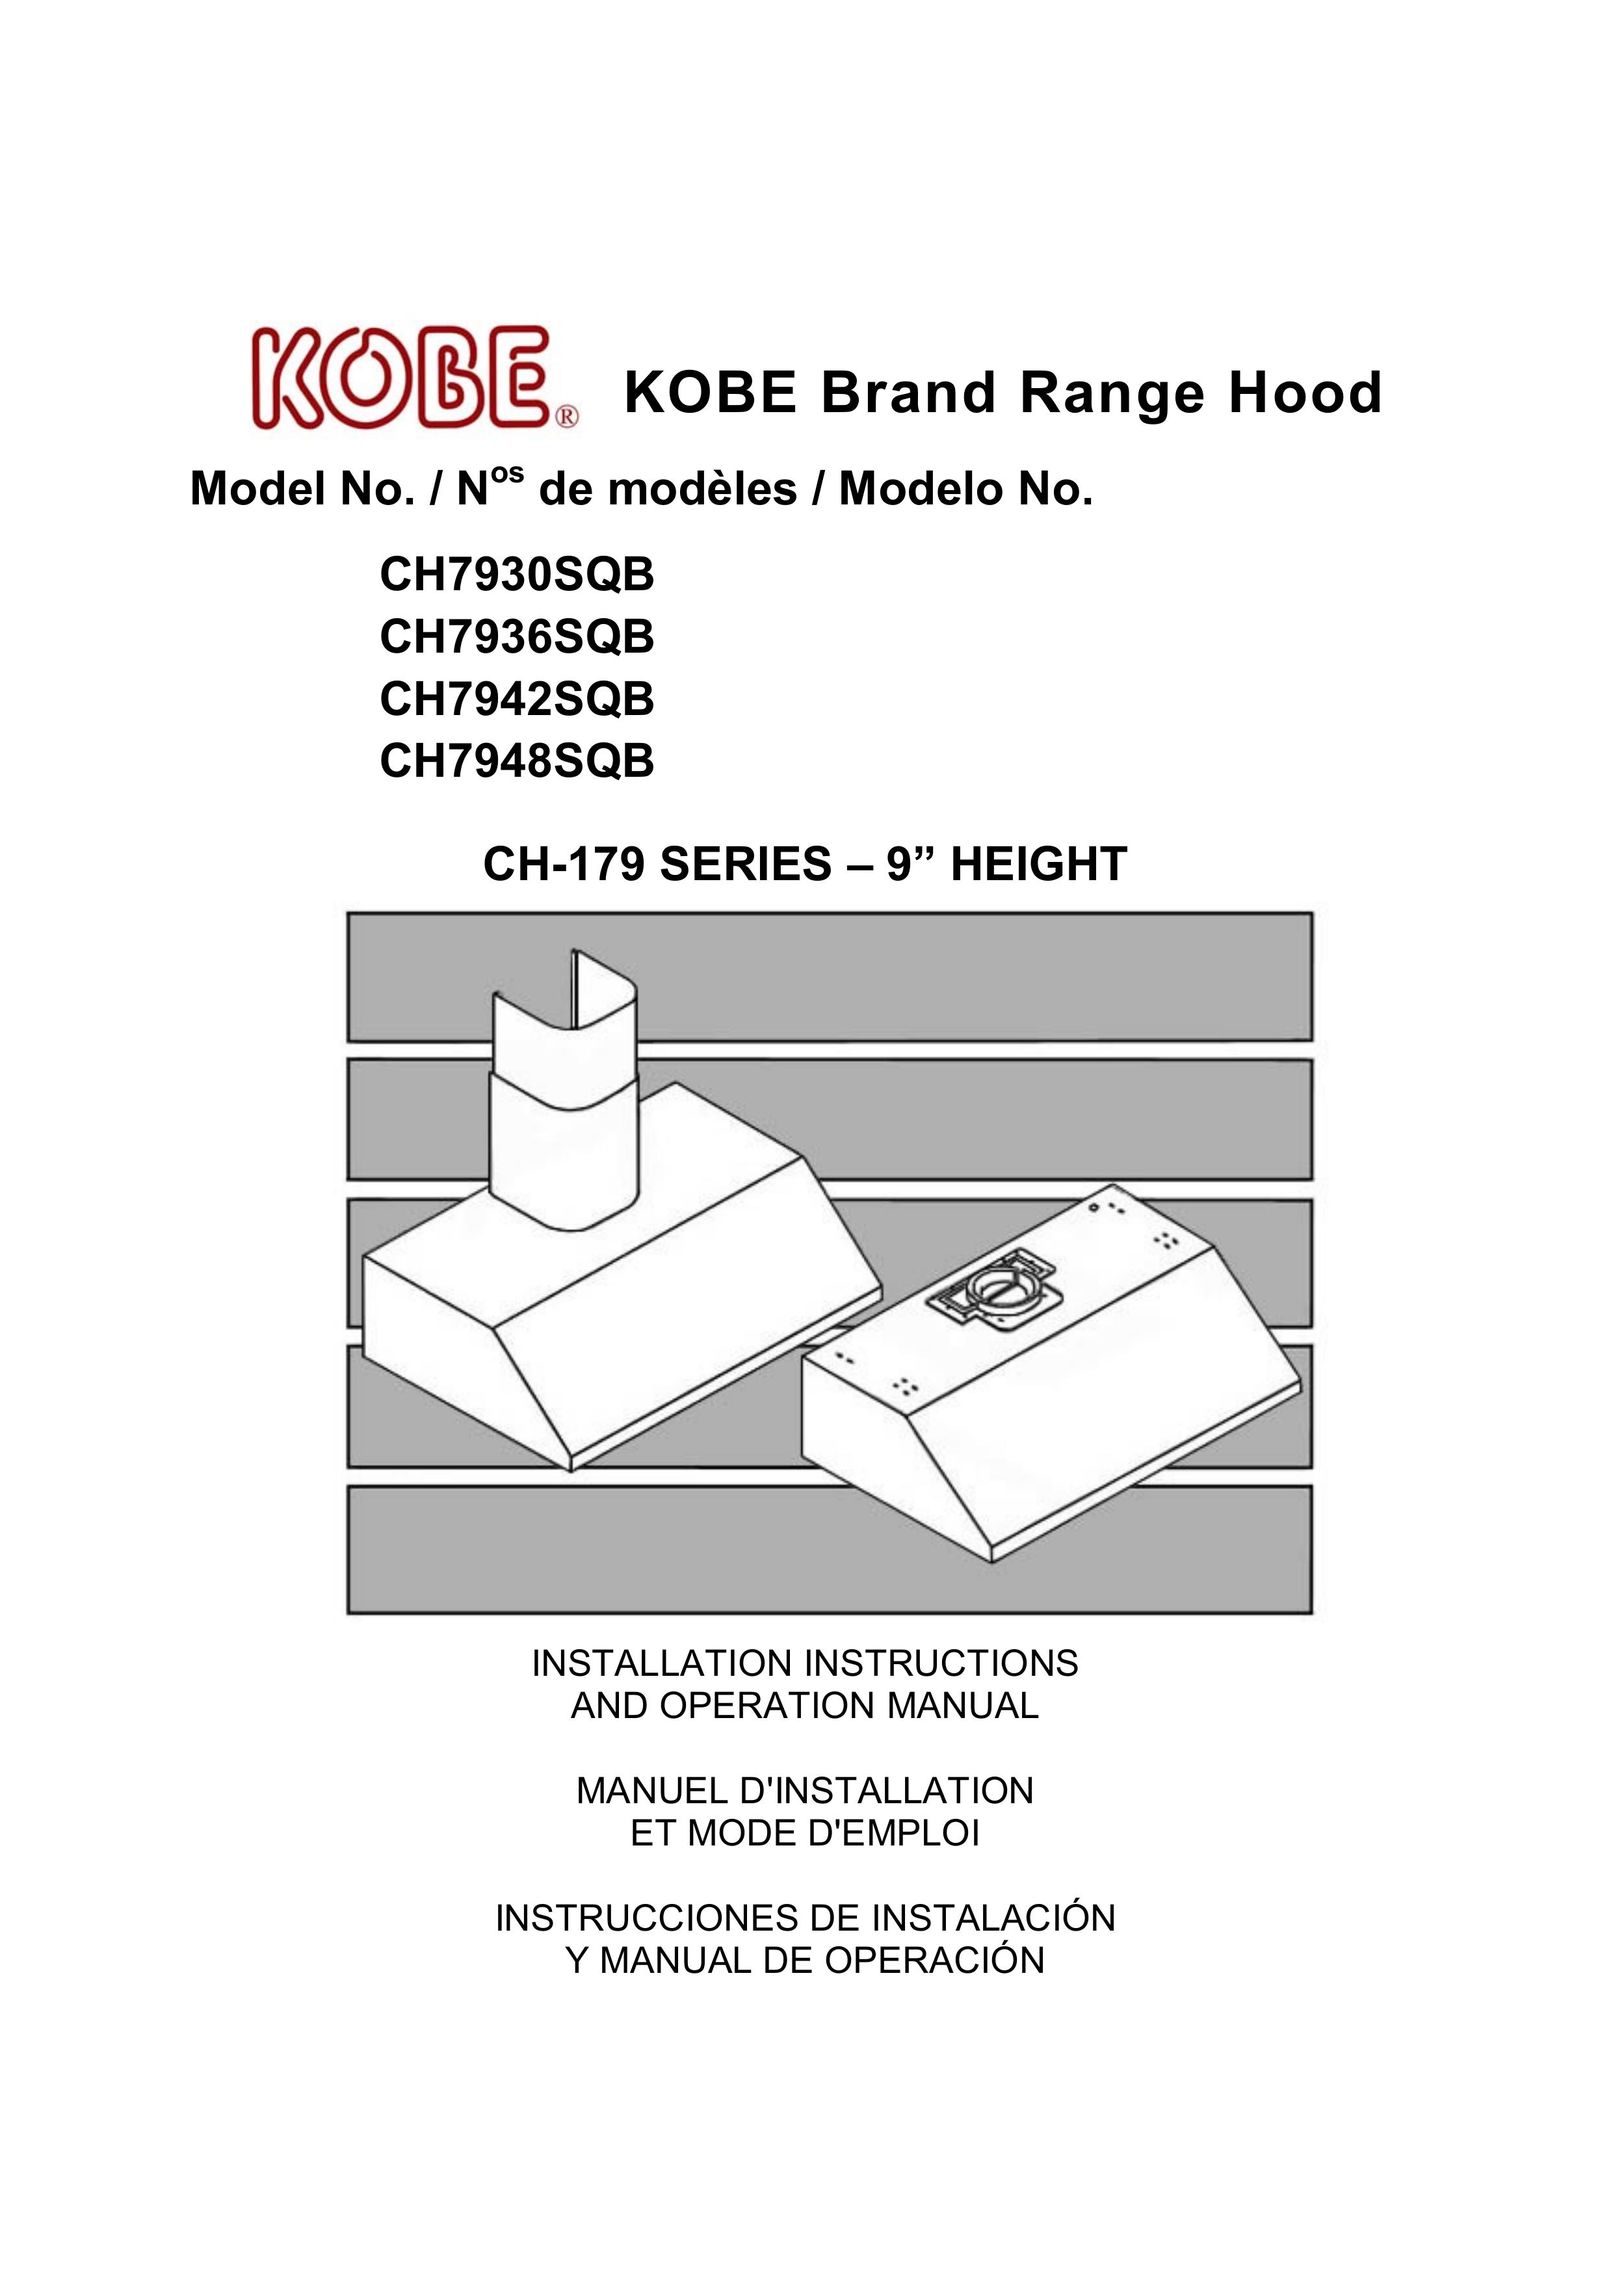 Kobe Range Hoods CH7948SQB Elliptical Trainer User Manual